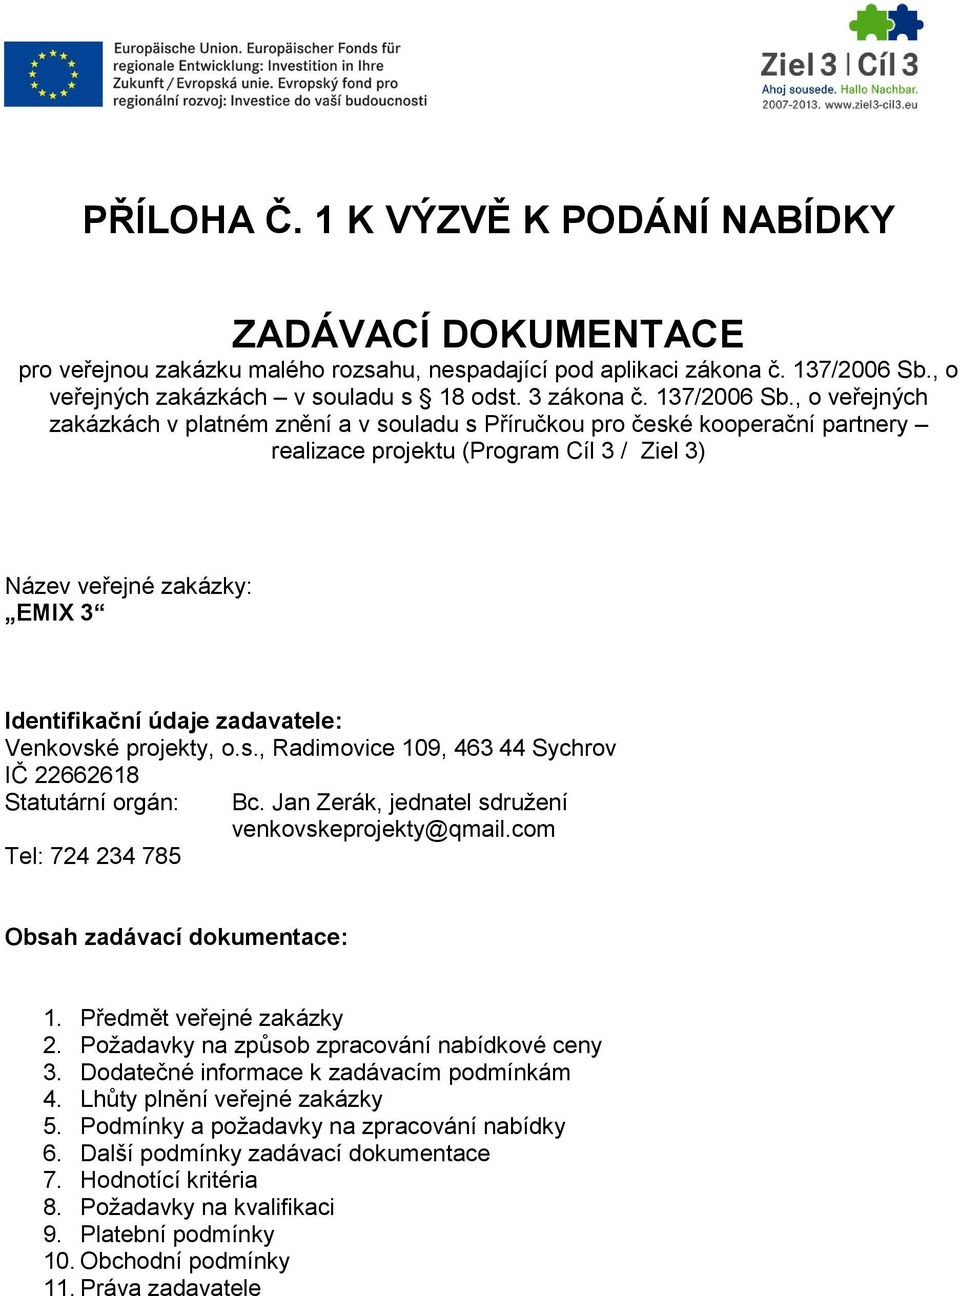 , o veřejných zakázkách v platném znění a v souladu s Příručkou pro české kooperační partnery realizace projektu (Program Cíl 3 / Ziel 3) Název veřejné zakázky: EMIX 3 Identifikační údaje zadavatele: